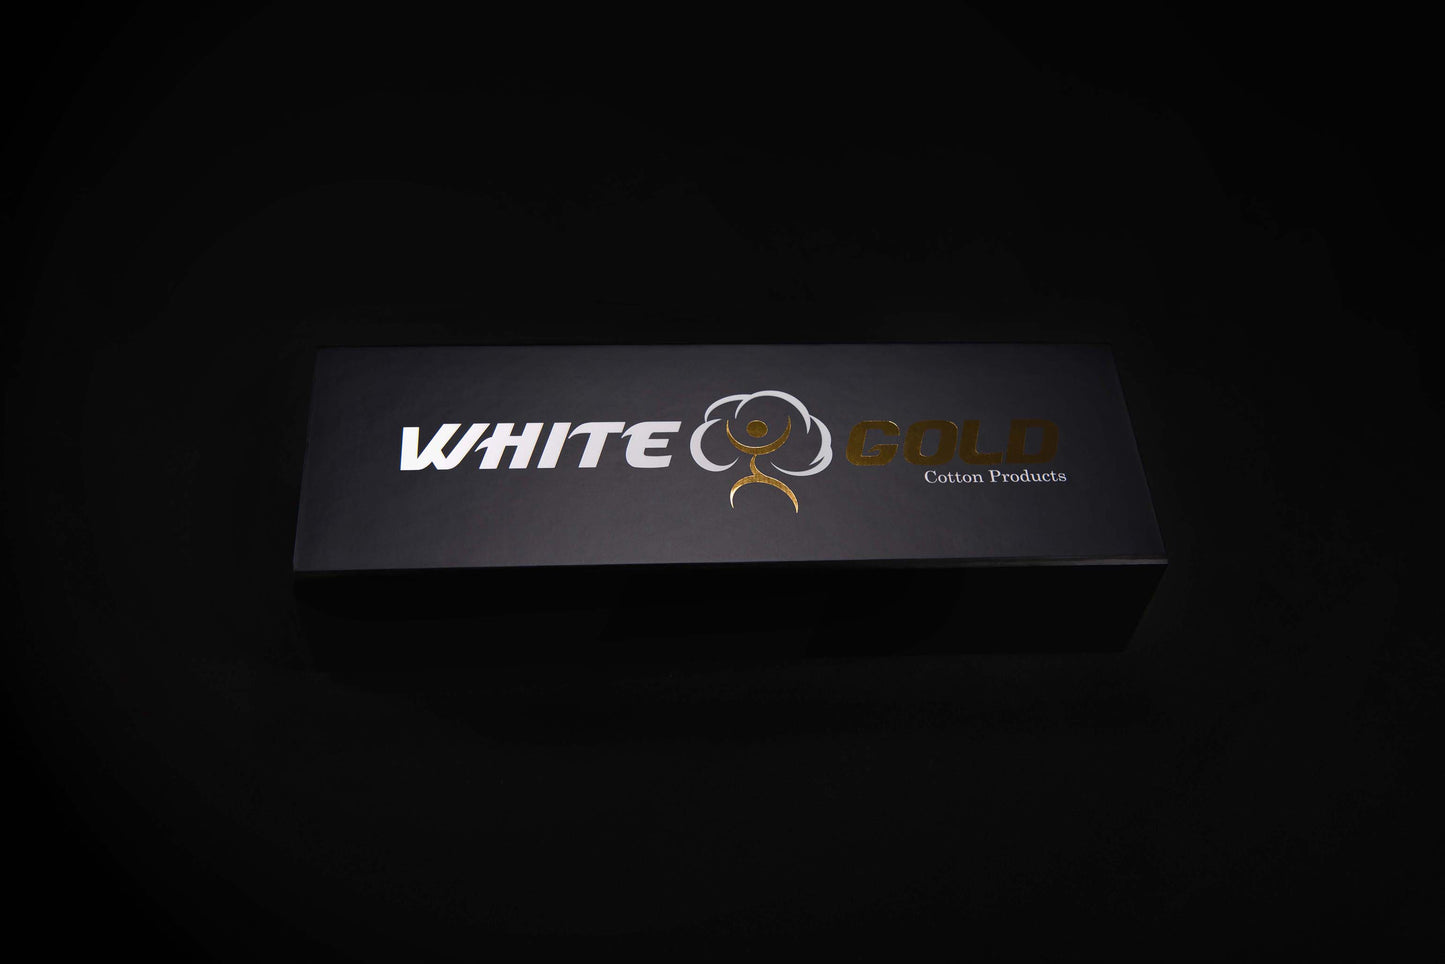 White Gold Box - 6 pairs